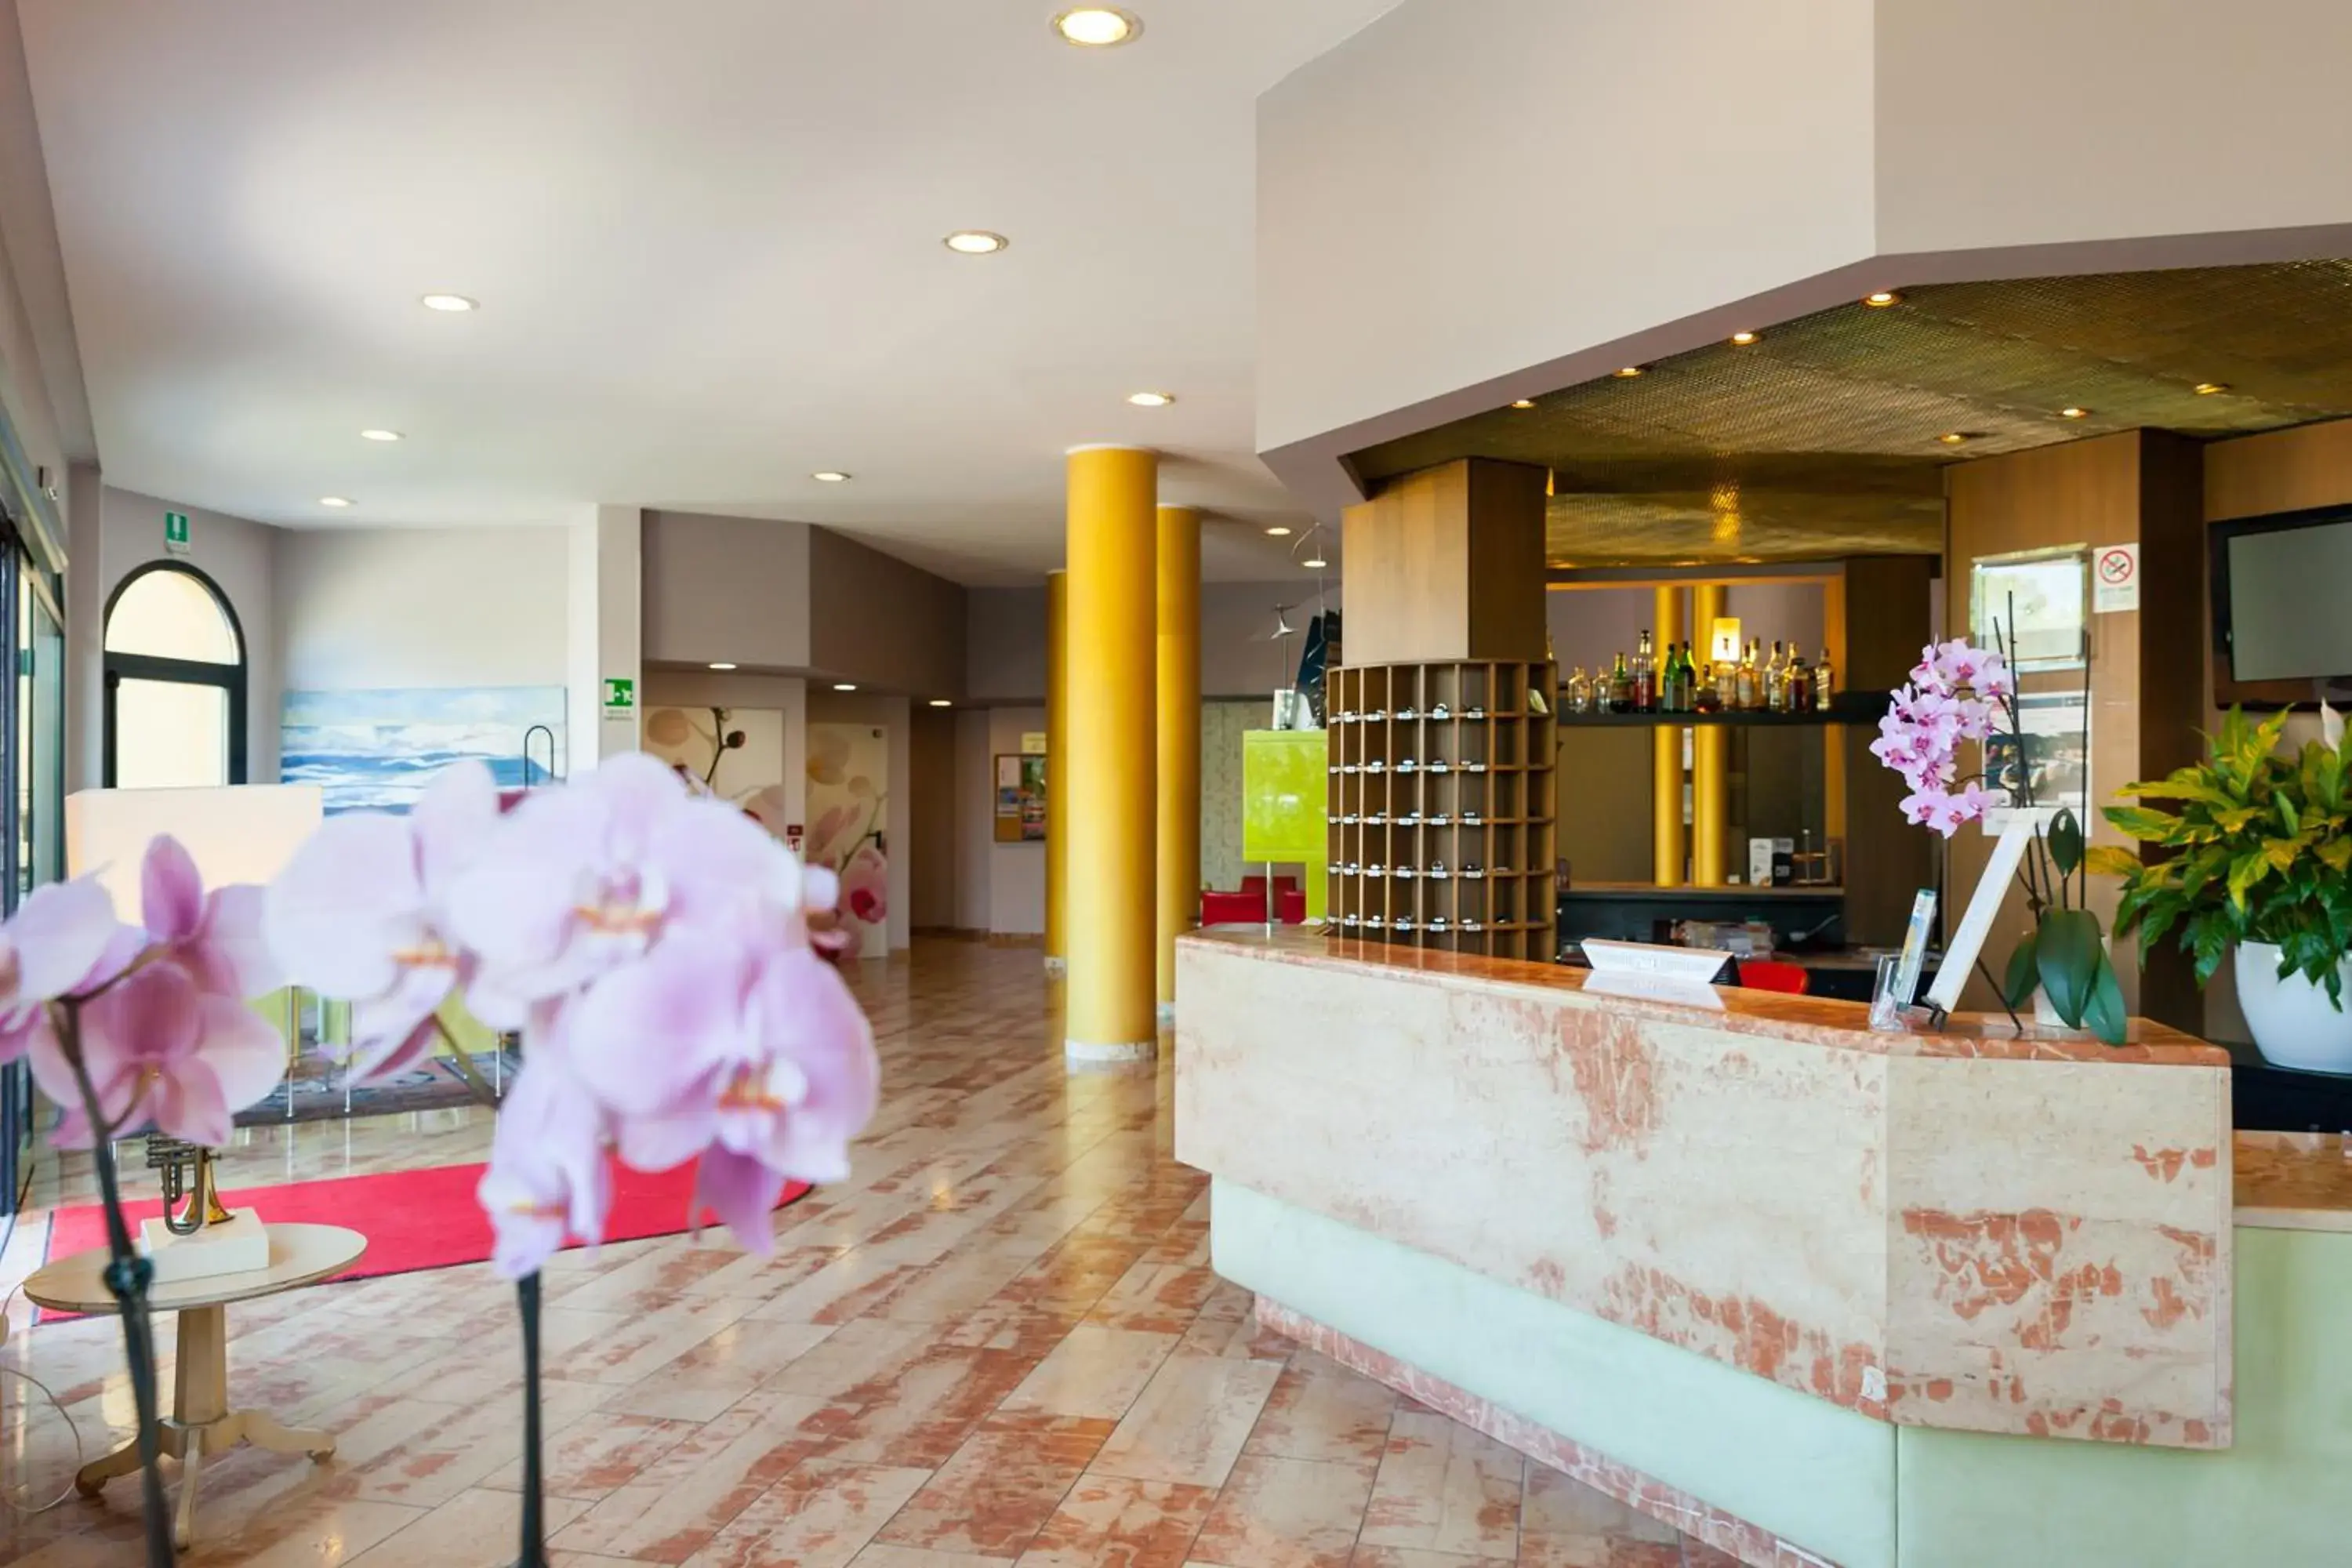 Lobby or reception in Hotel Ristorante Al Fiore